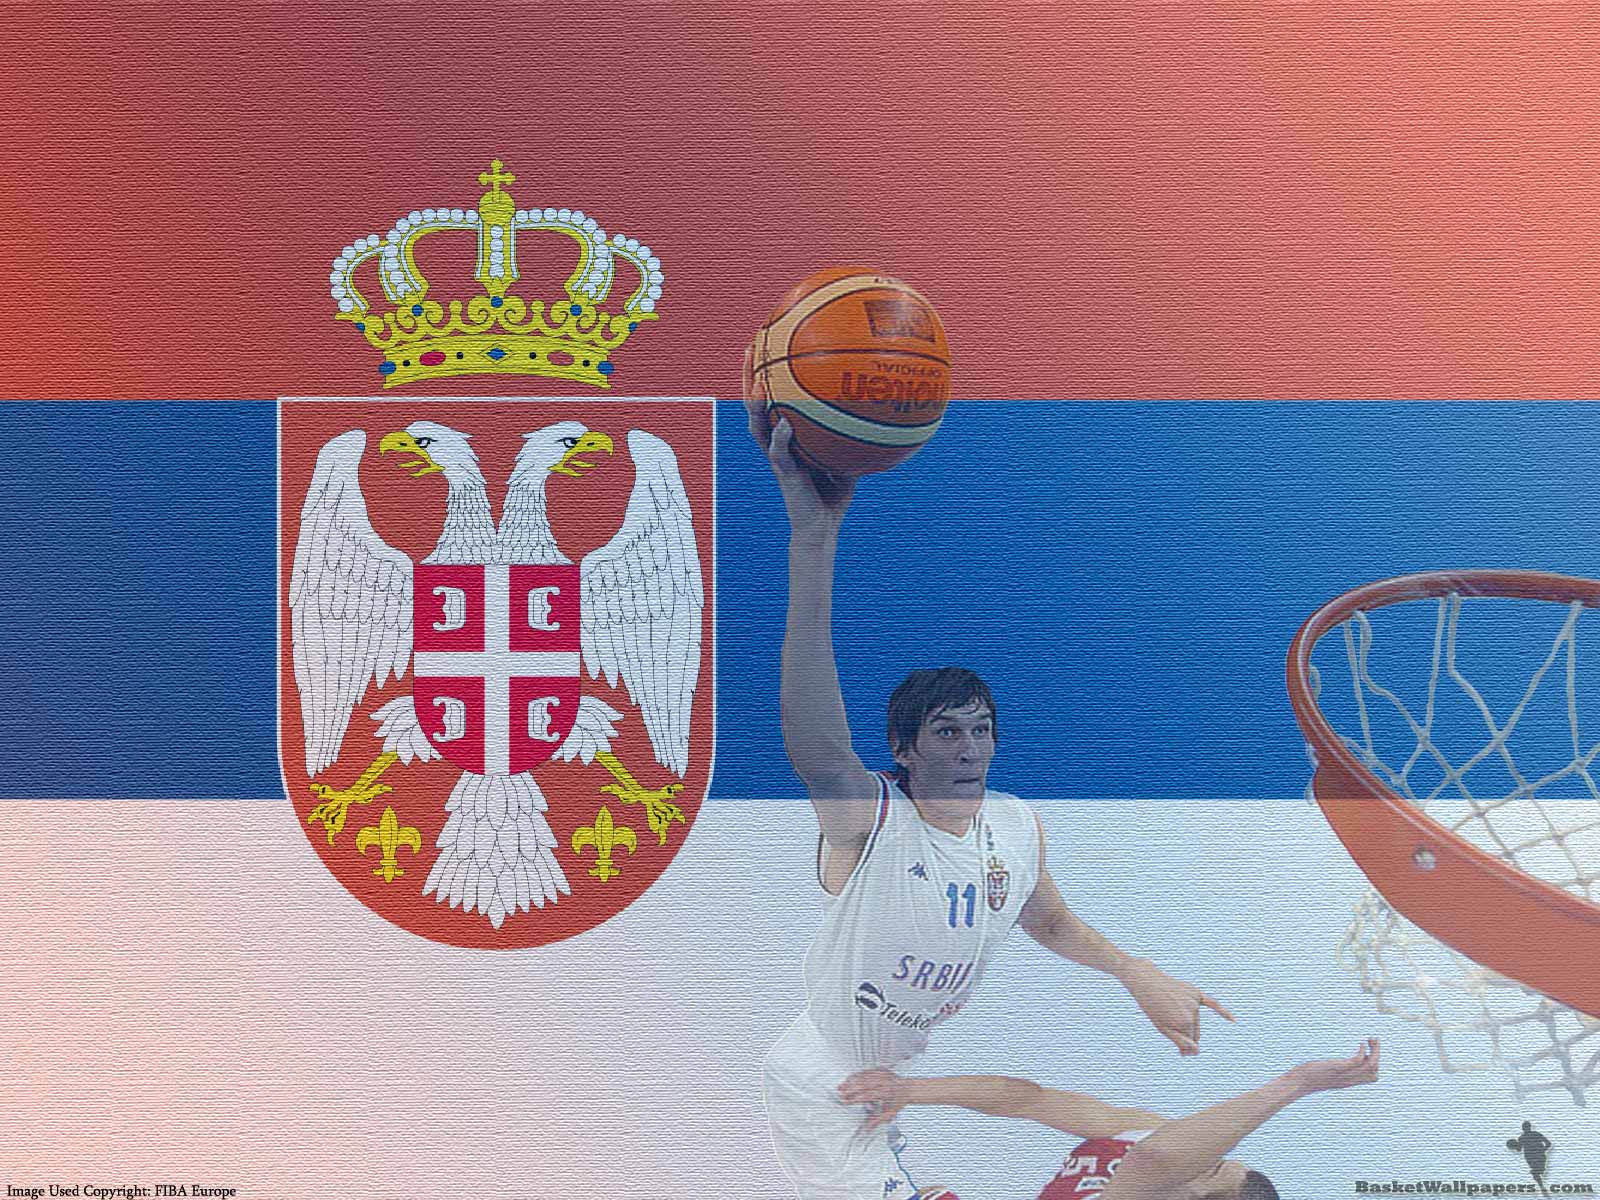 Boban Marjanovic Wallpaper. Basketball Wallpaper at